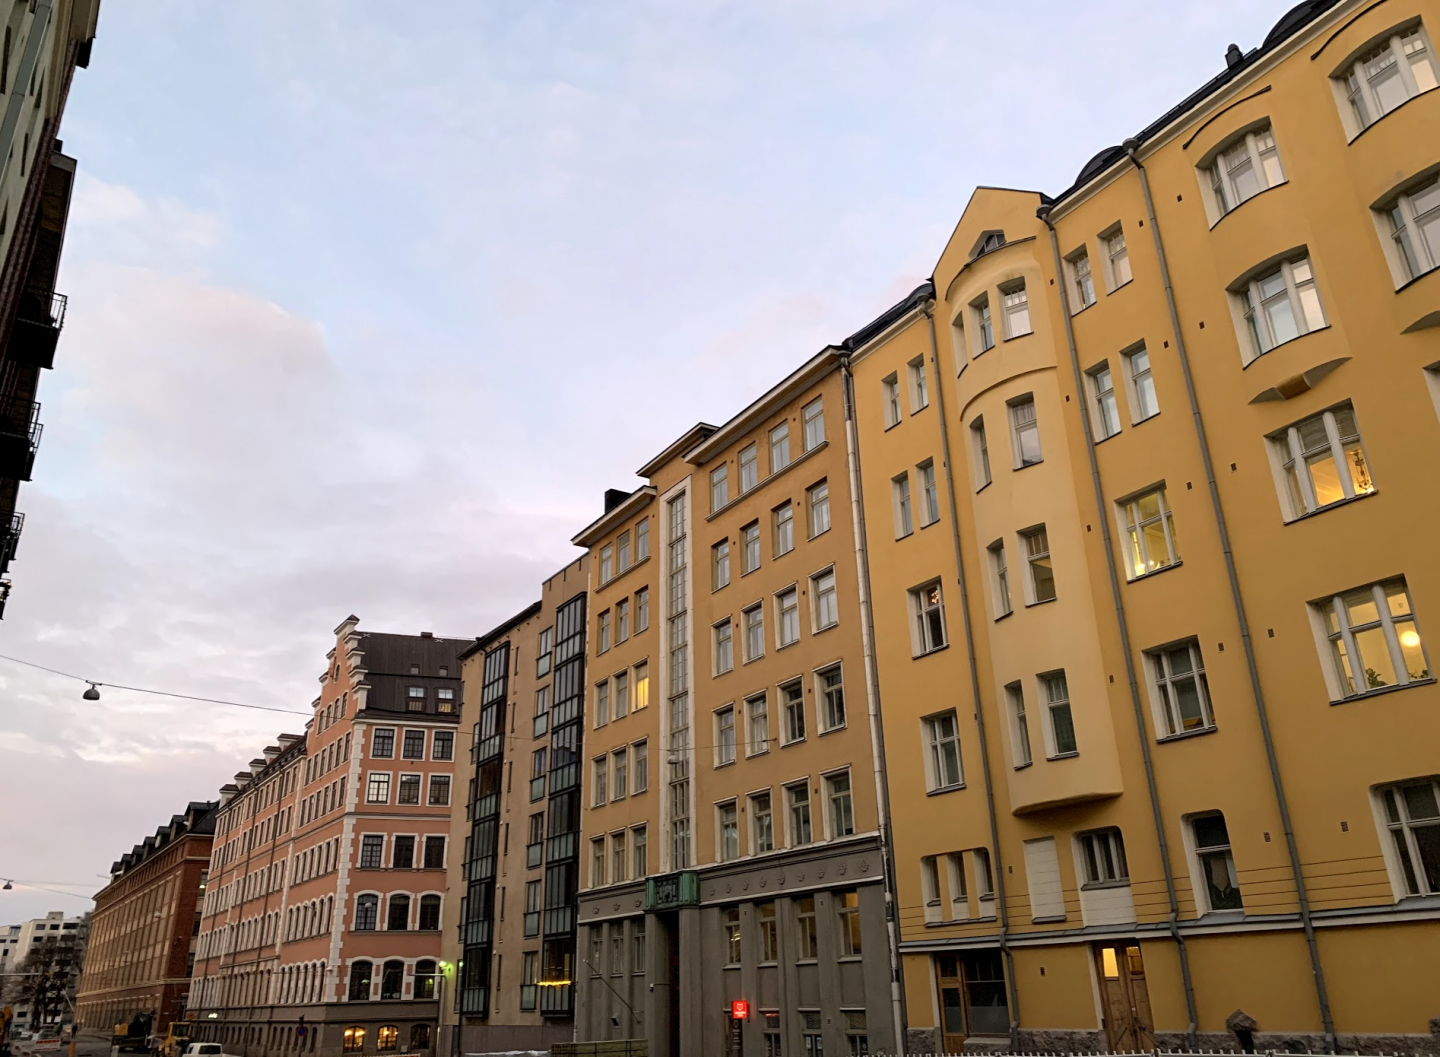 Buildings in Helsinki, Finland